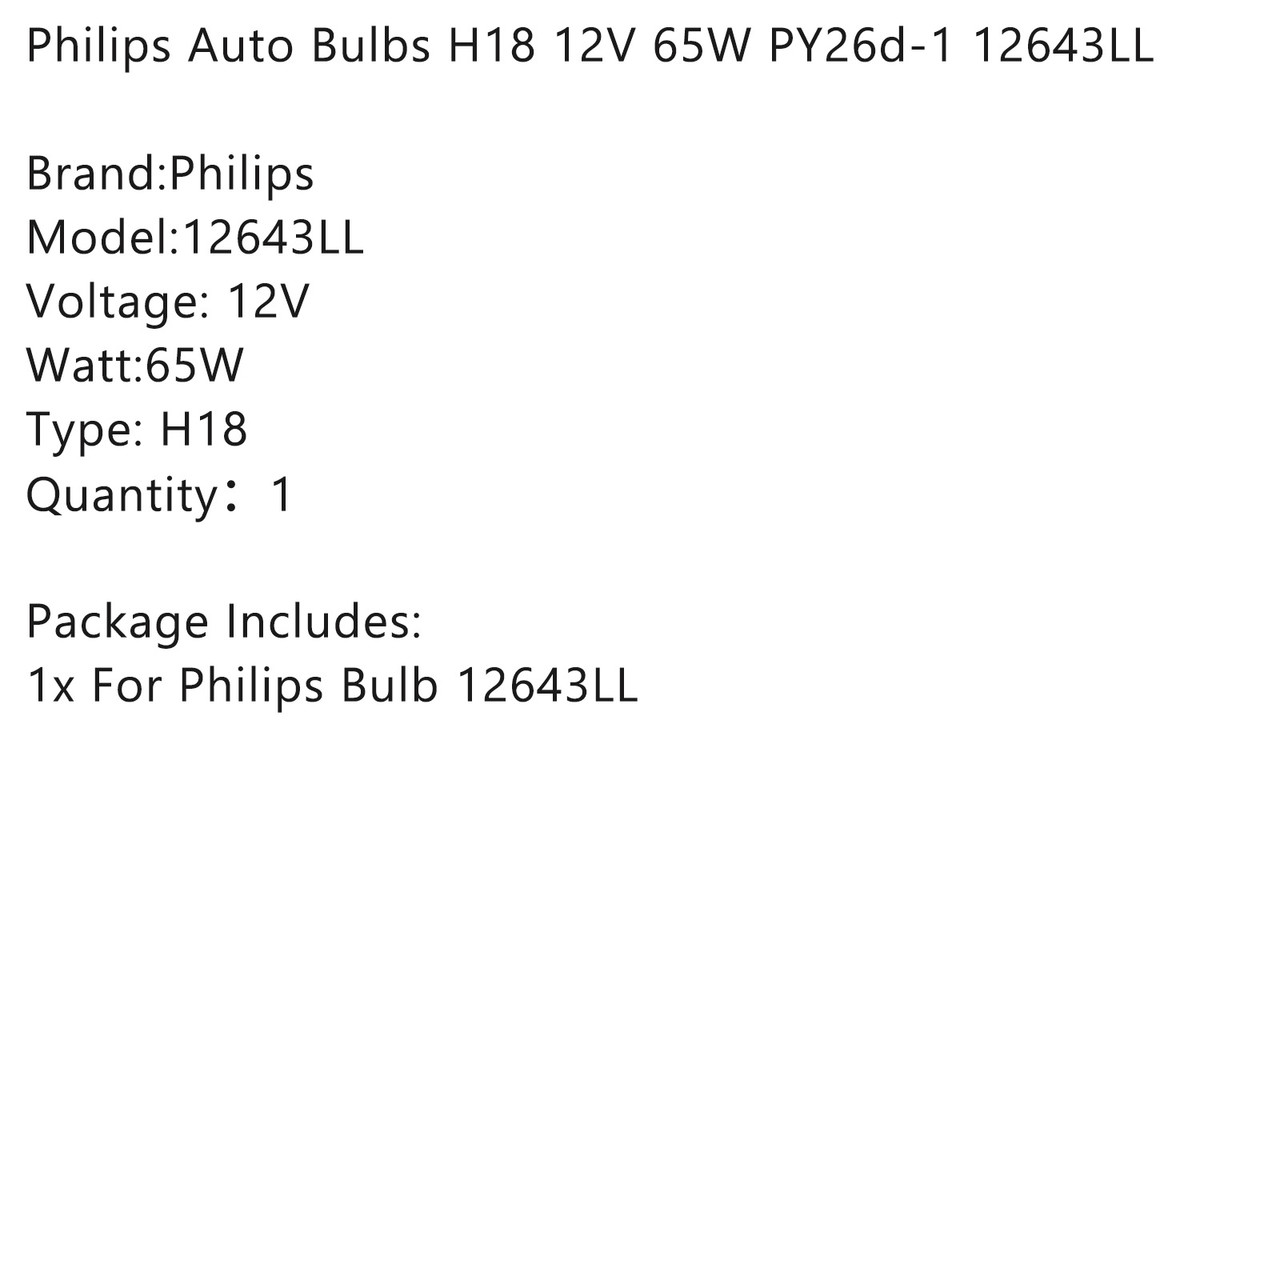 Philips Auto Bulbs H18 12V 65W PY26d-1 12643LL